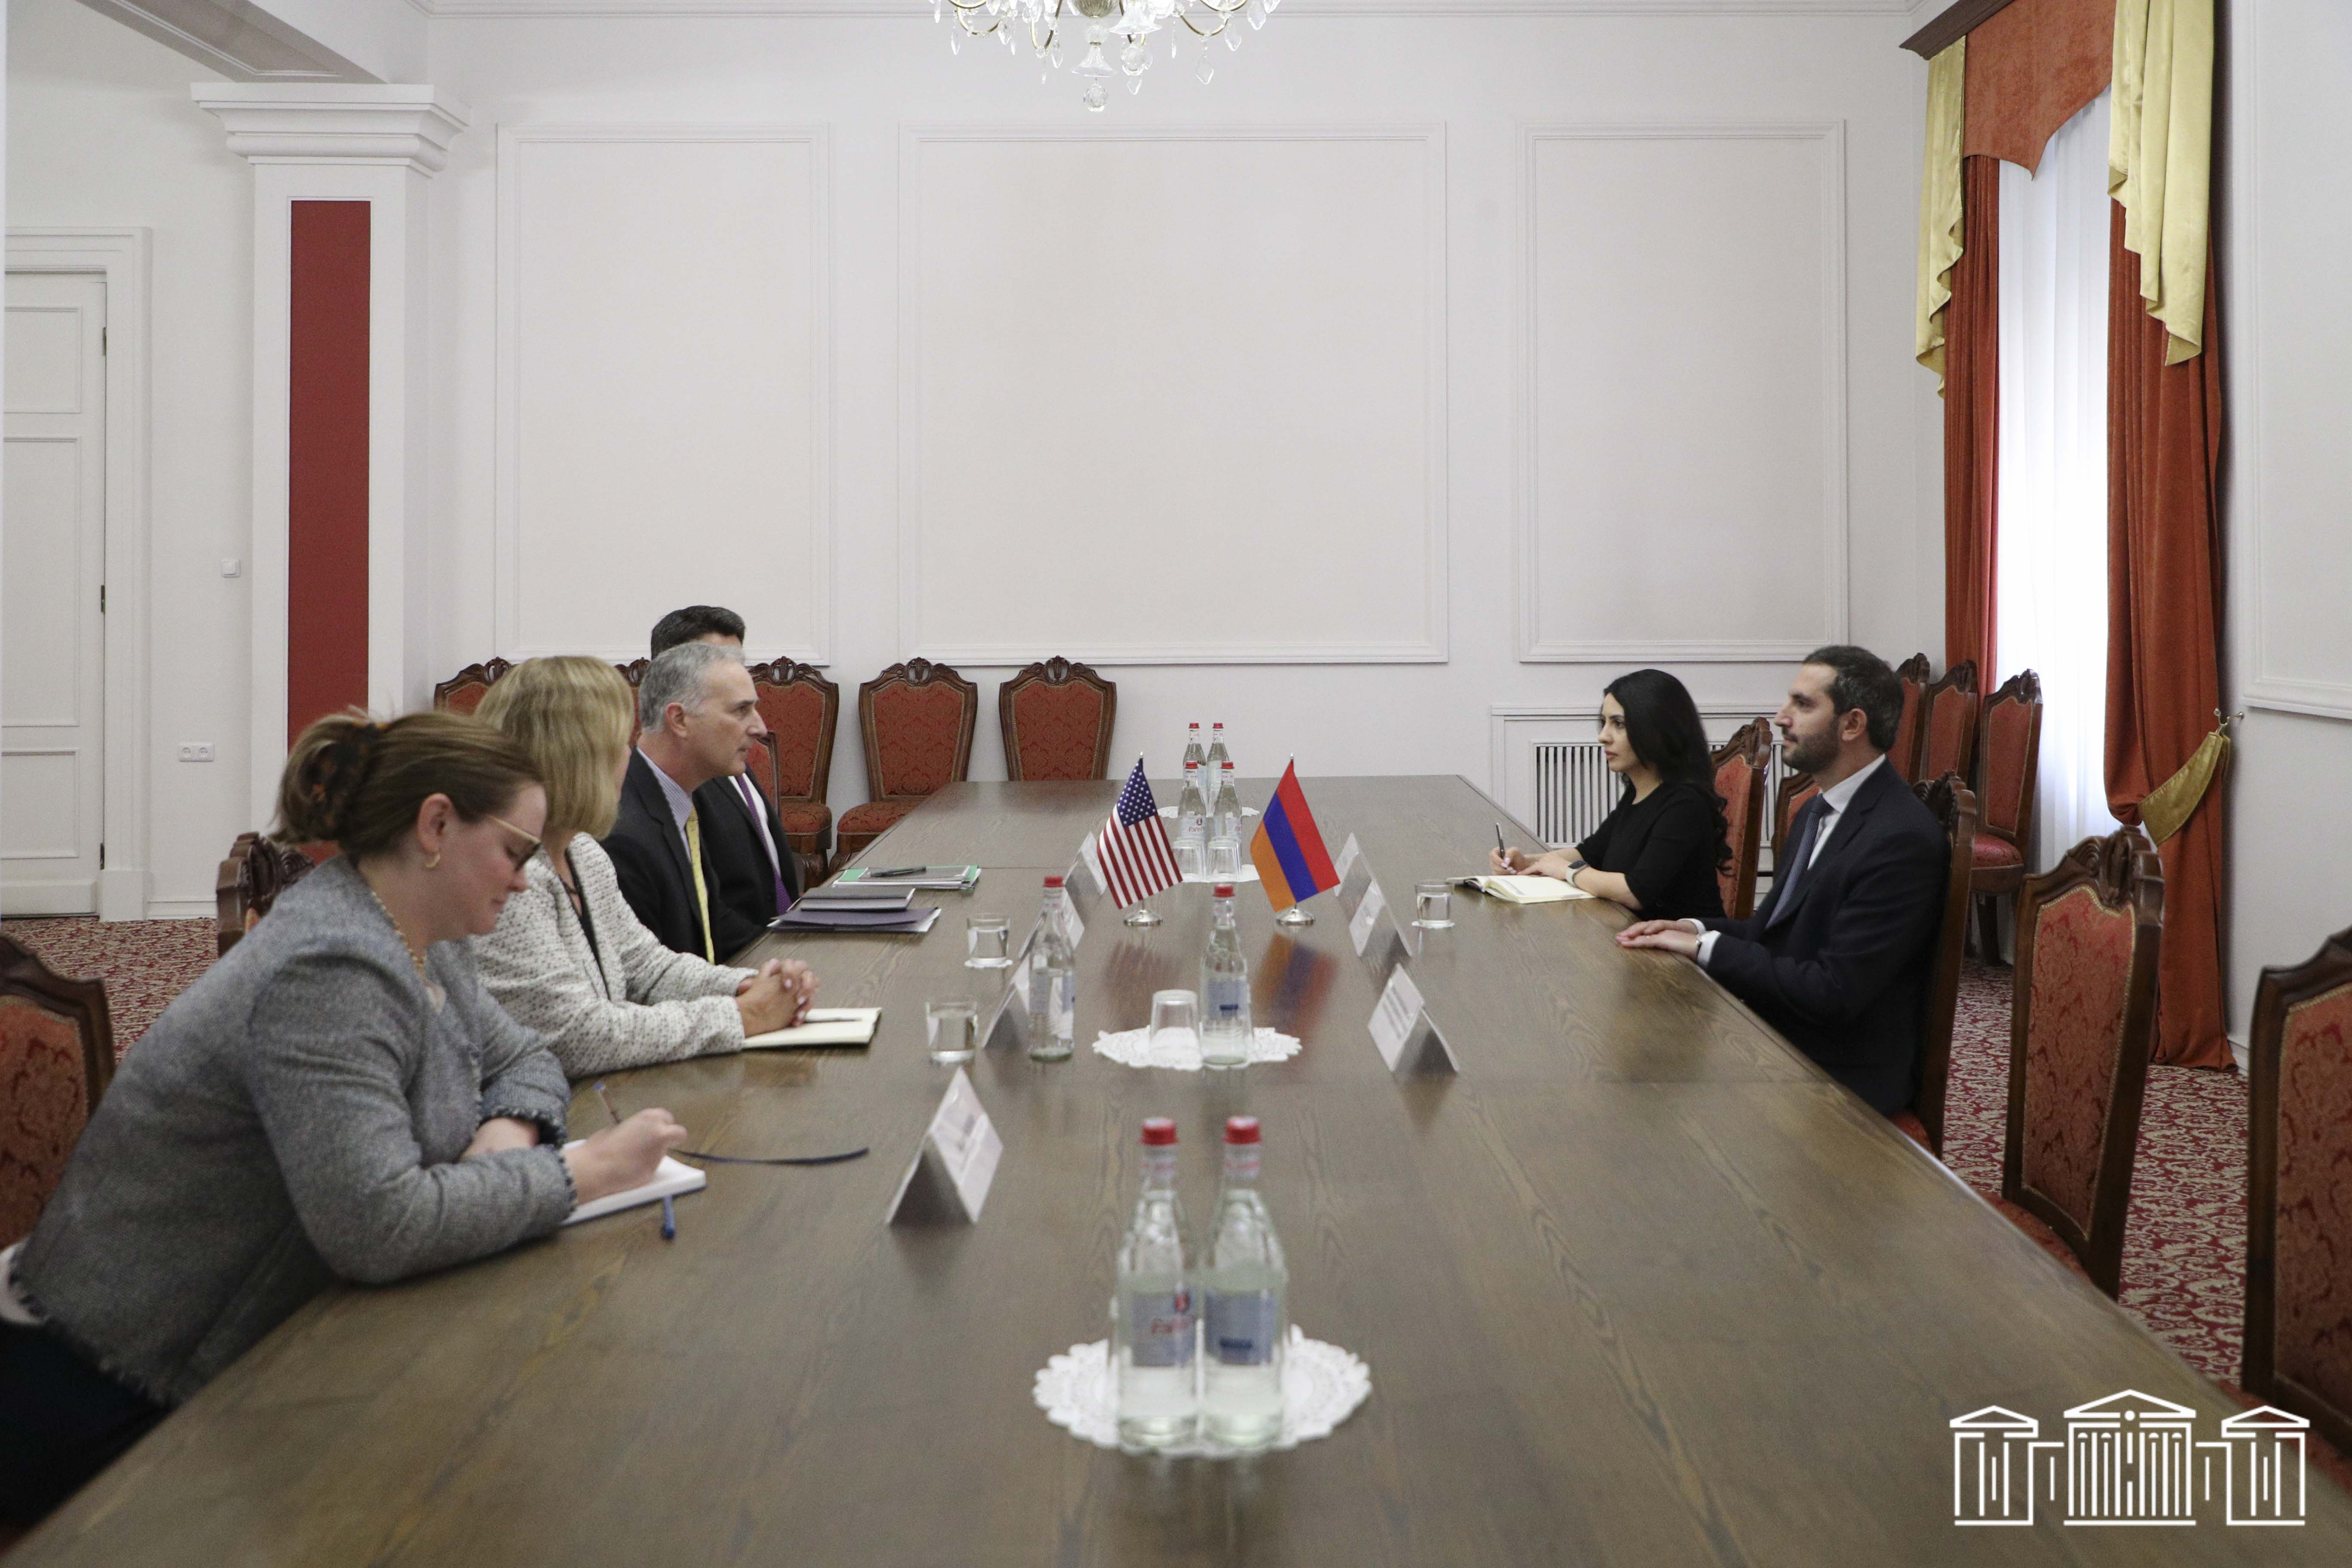 Ռուբինյանն ու ԱՄՆ պետական դեպարտամենտի Կովկասի բանակցությունների հարցերով ավագ խորհրդականը քննարկել են տարածաշրջանային անվտանգությանն առնչվող հարցեր